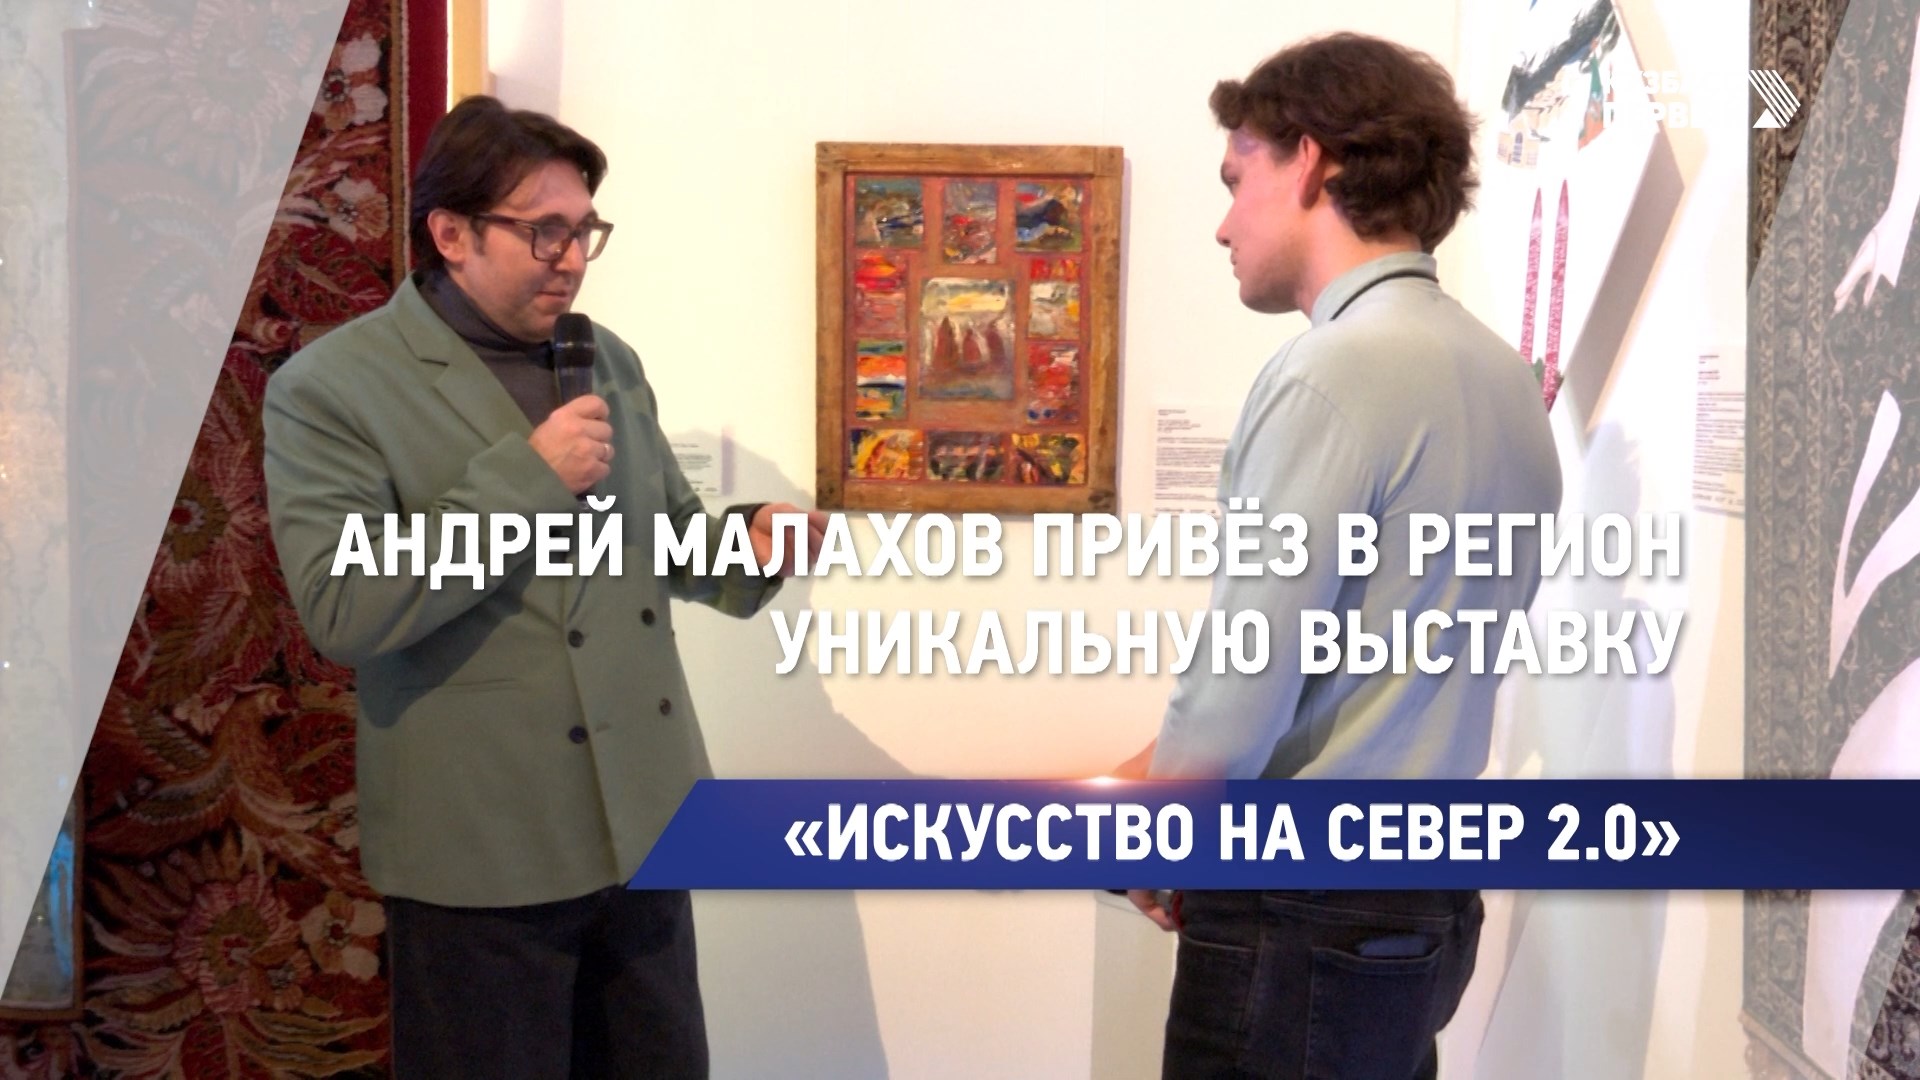 Андрей Малахов привёз в регион уникальную выставку